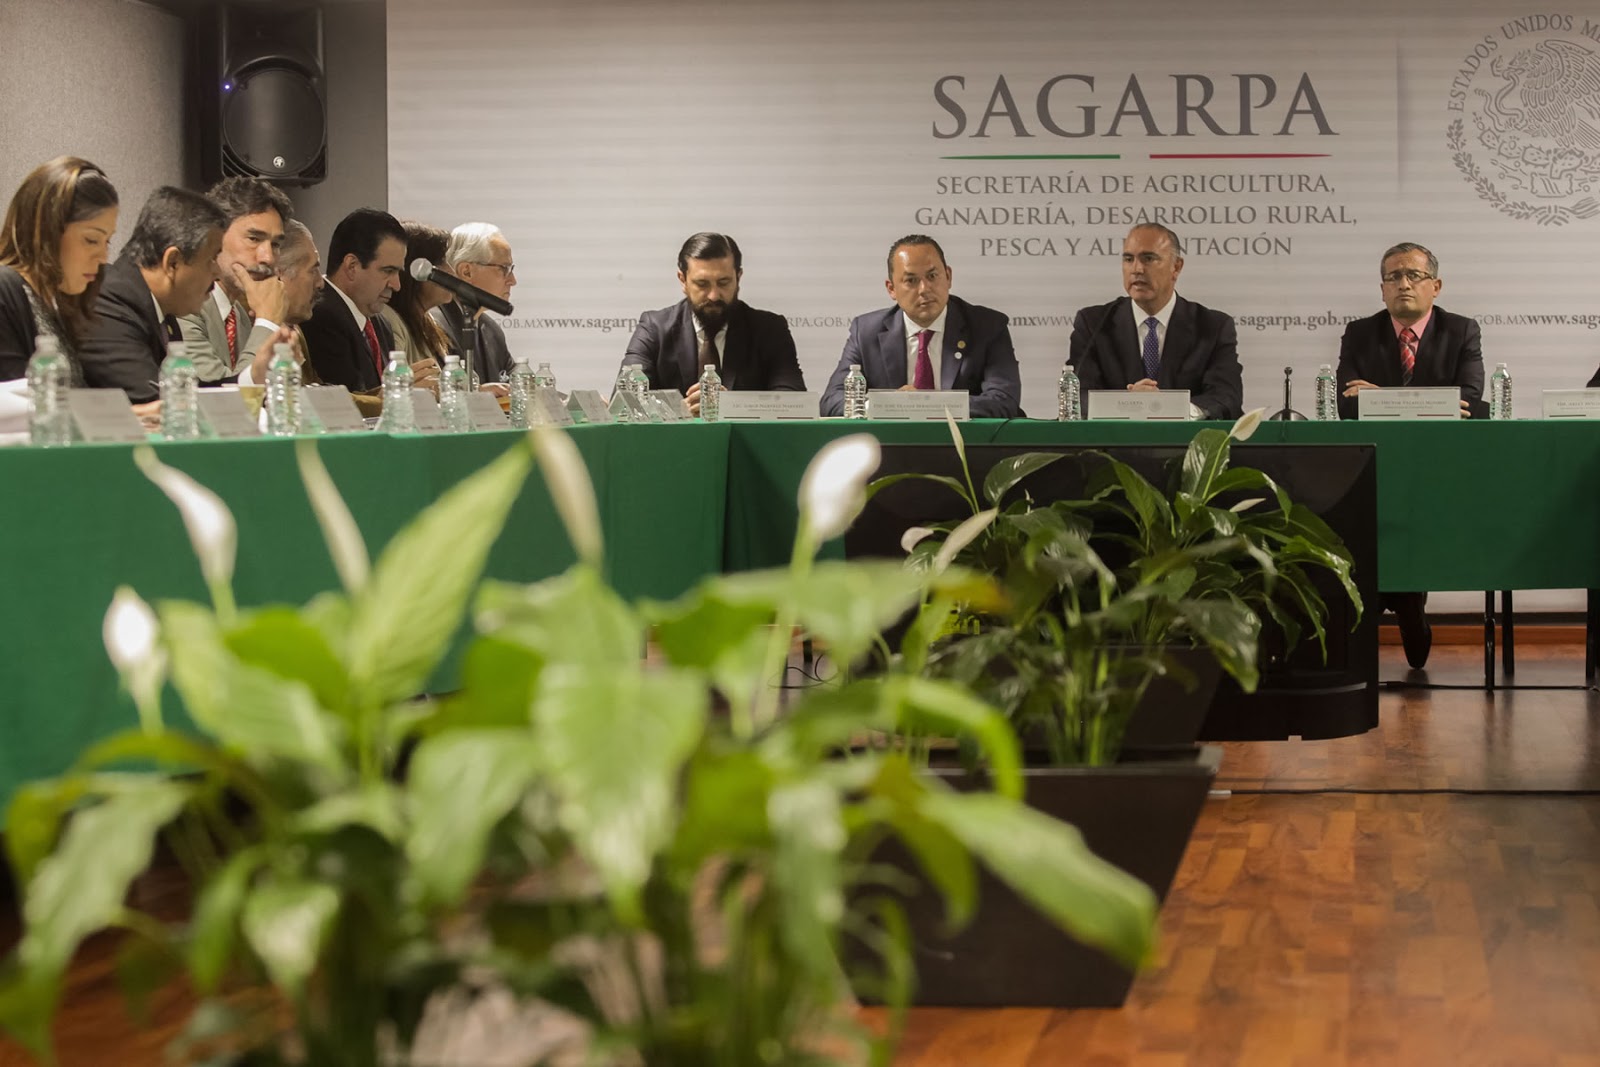  Admite Sagarpa deuda histórica con el campo; Mancera propone alianzas para resolver demandas